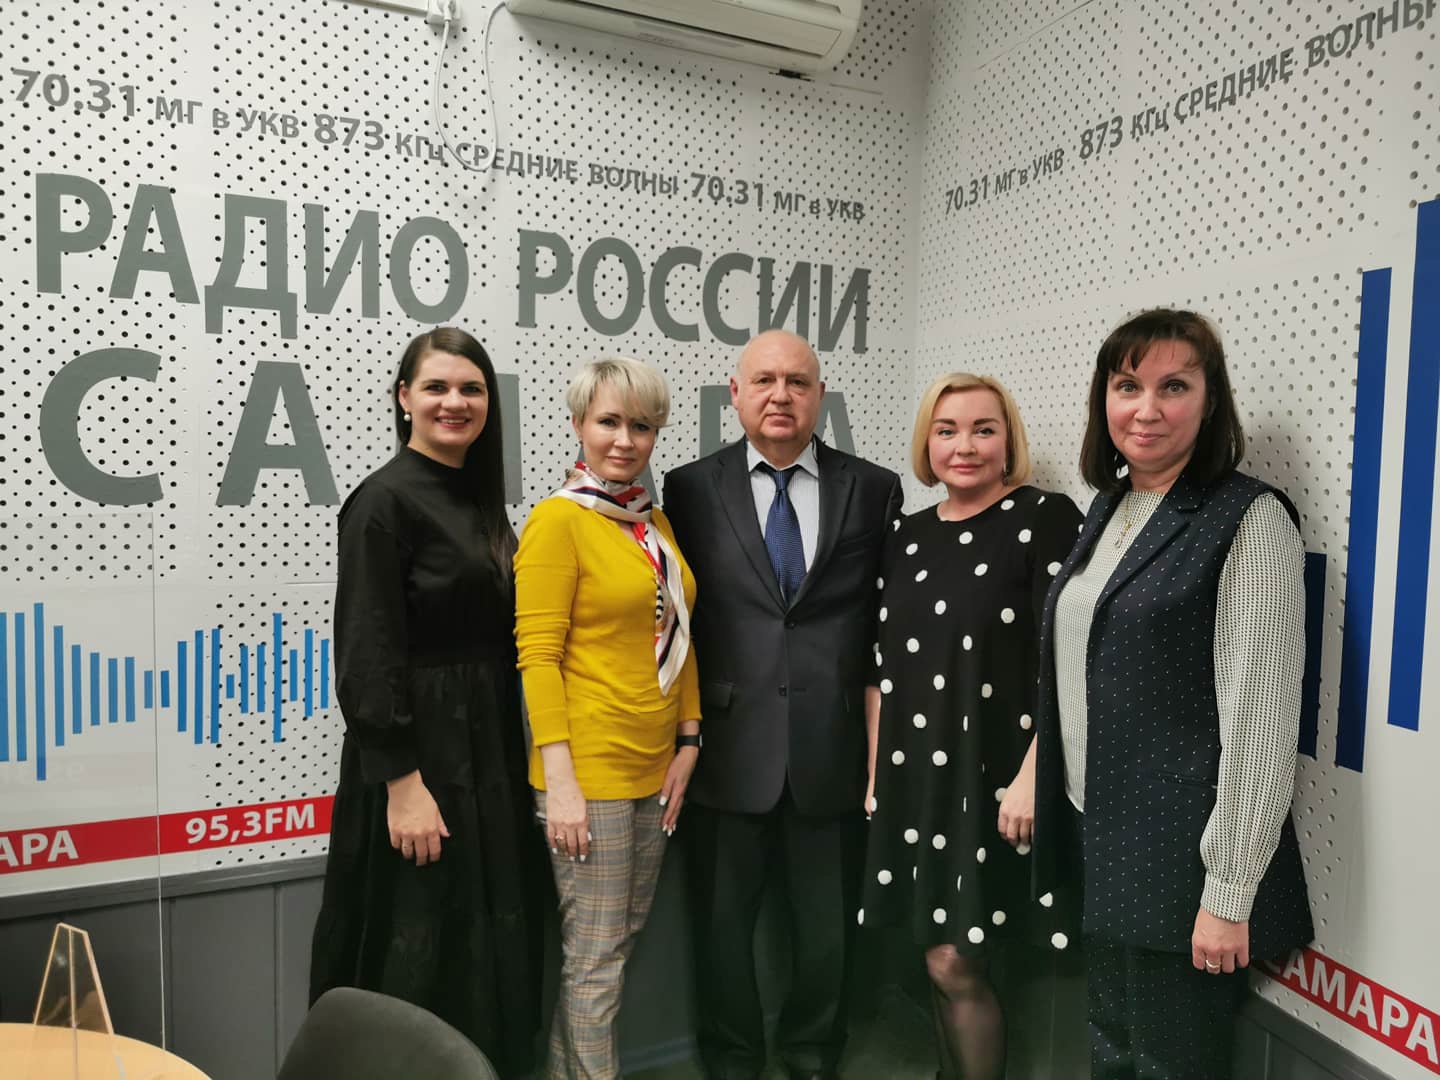 17 марта, в эфире «Радио России – Самара» новый выпуск программы о медицине 